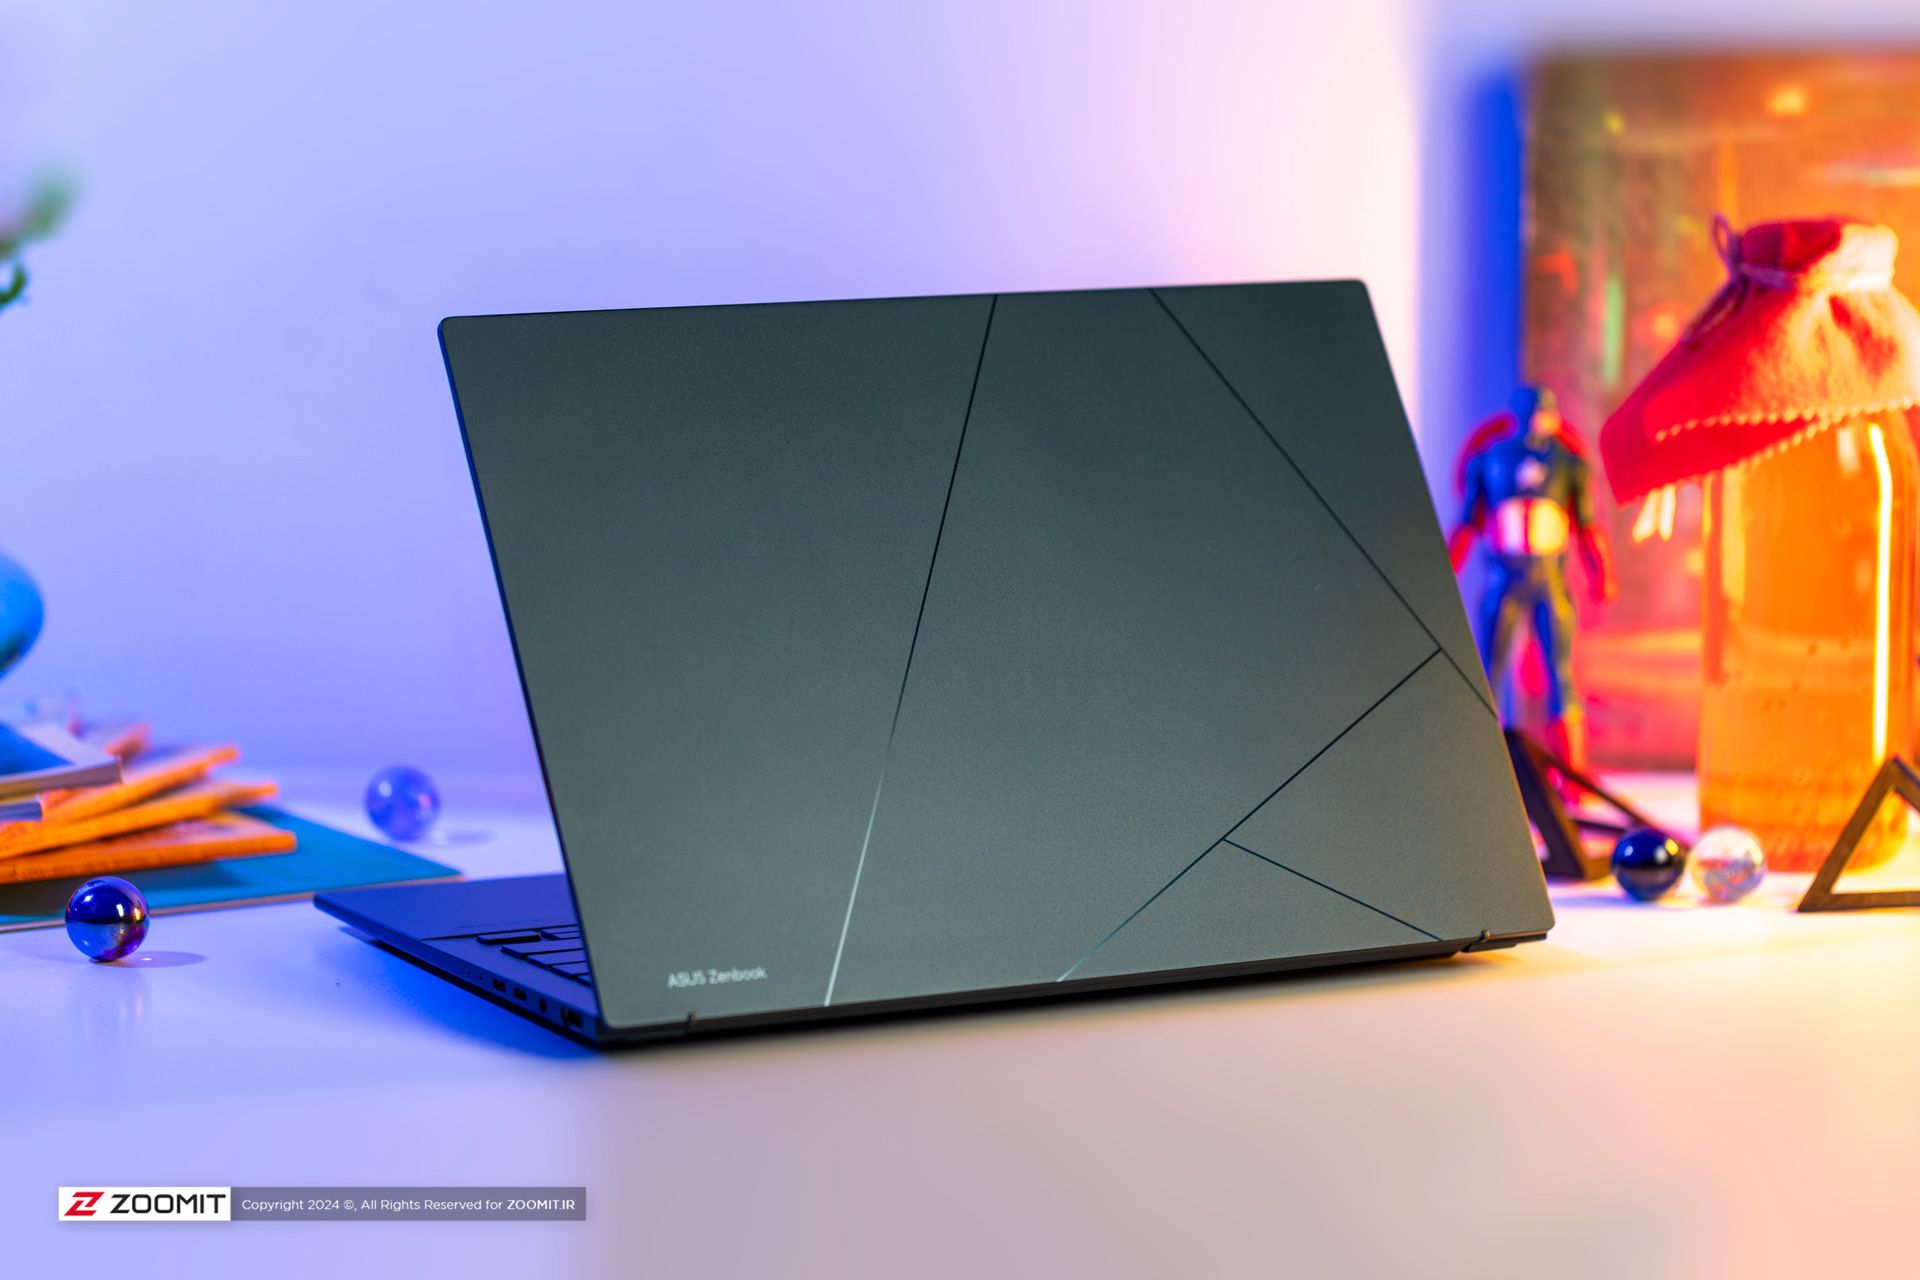 Back design of Asus Zenbook 14 laptop